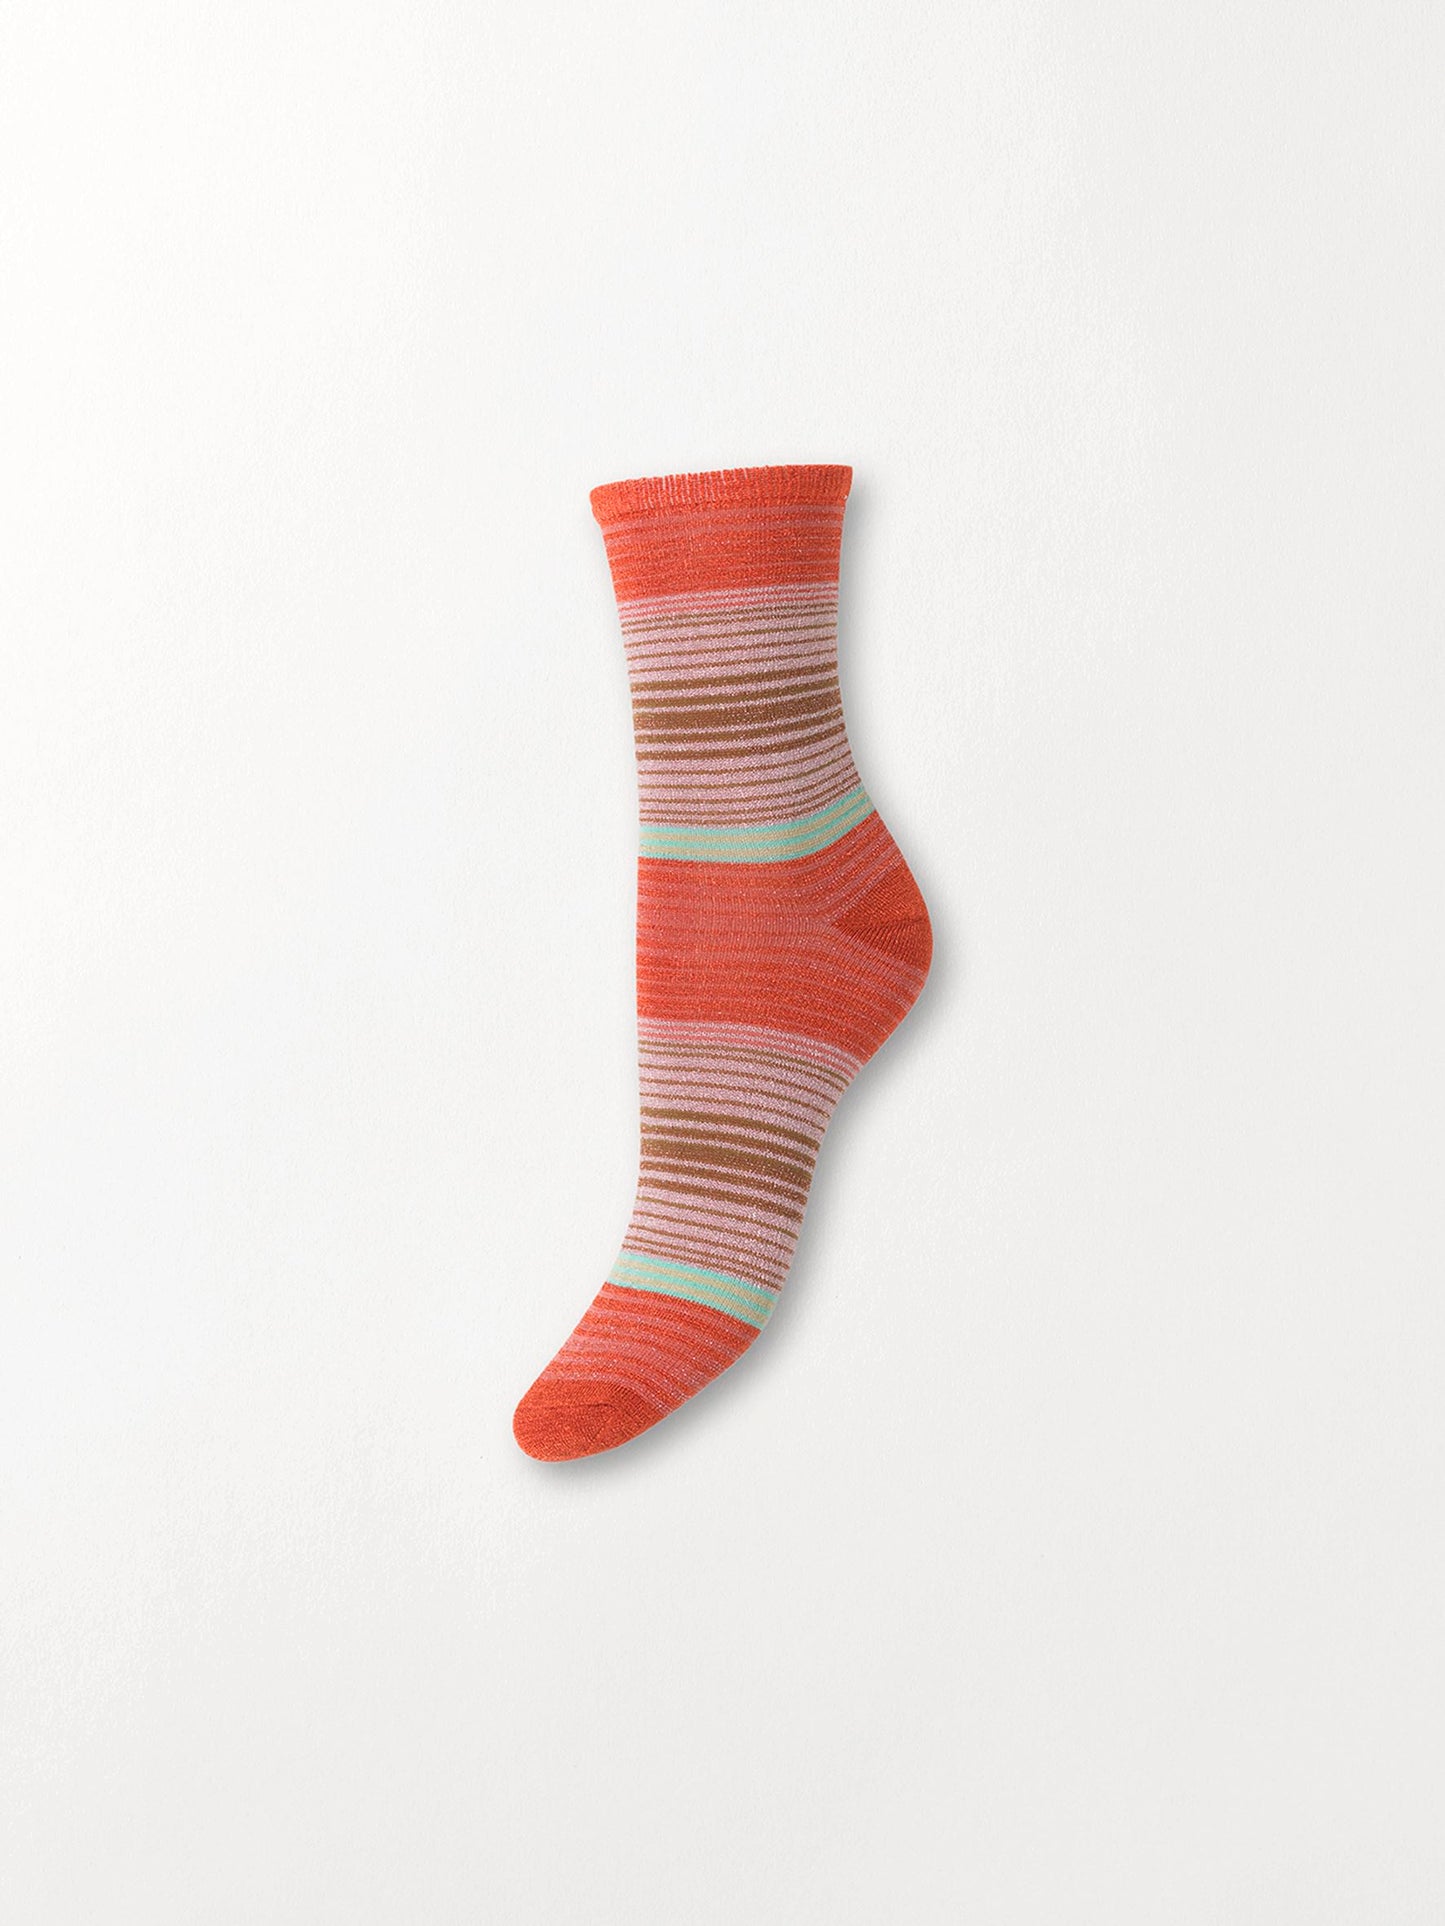 Imma Thin Stripe Sock Socks BeckSöndergaard